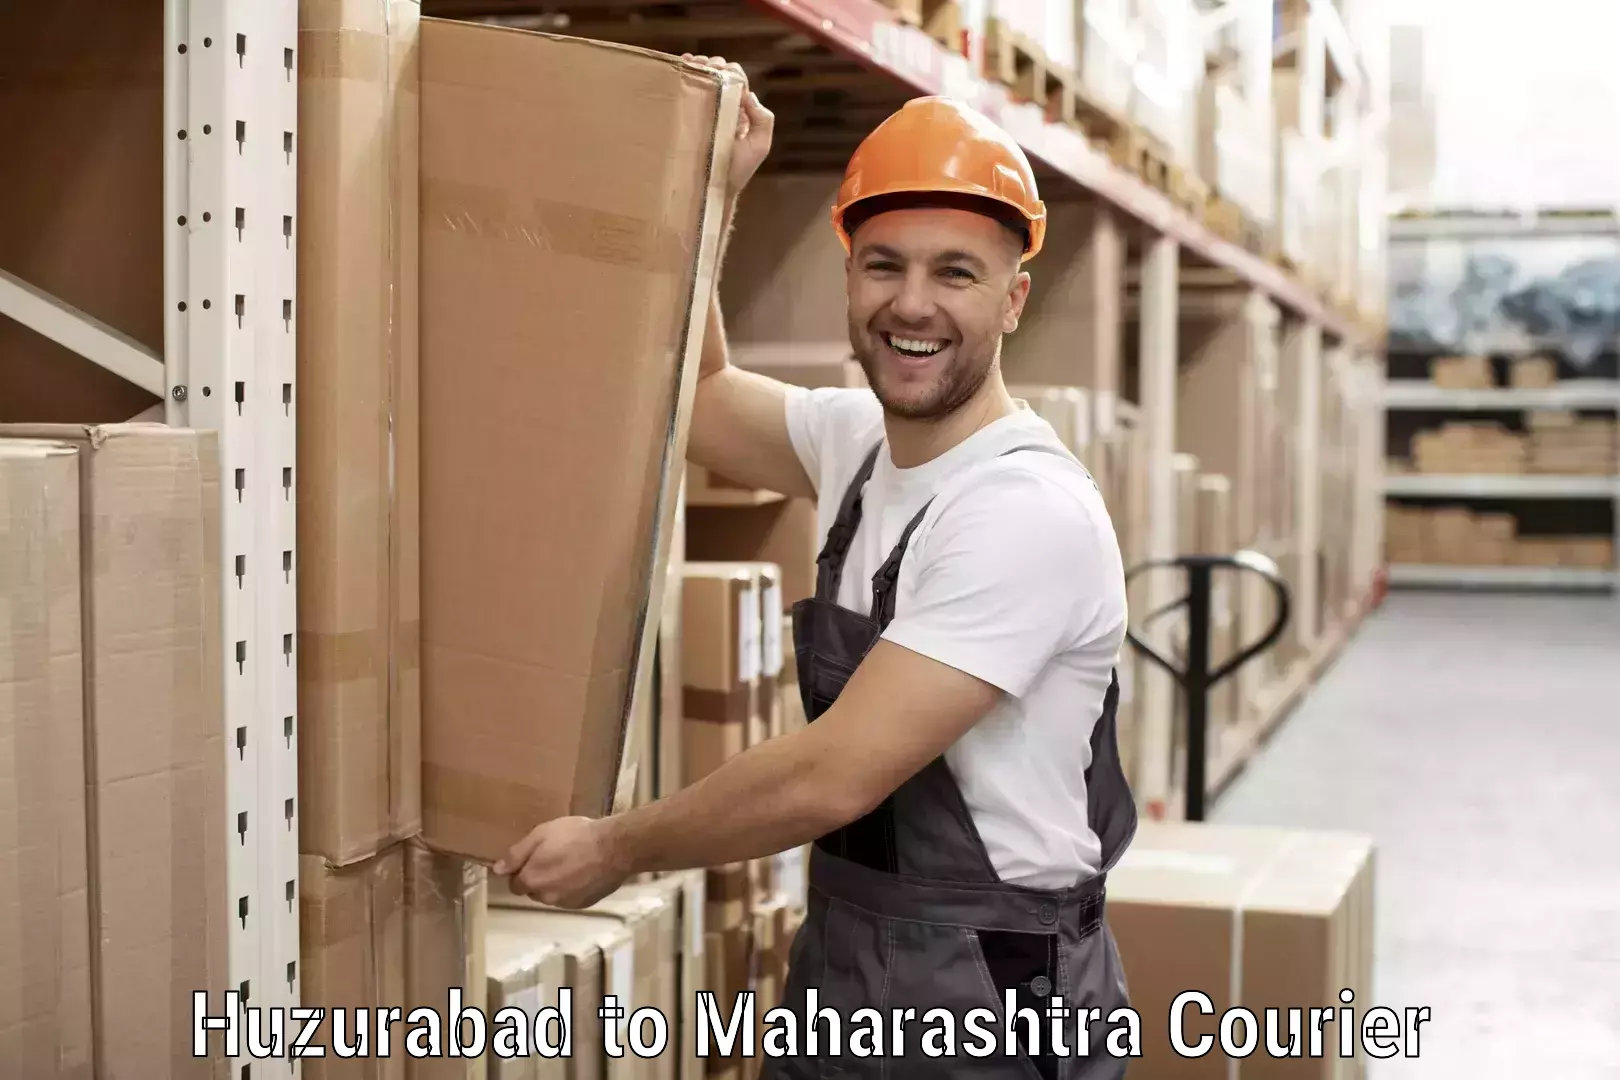 Seamless shipping experience Huzurabad to Maharashtra